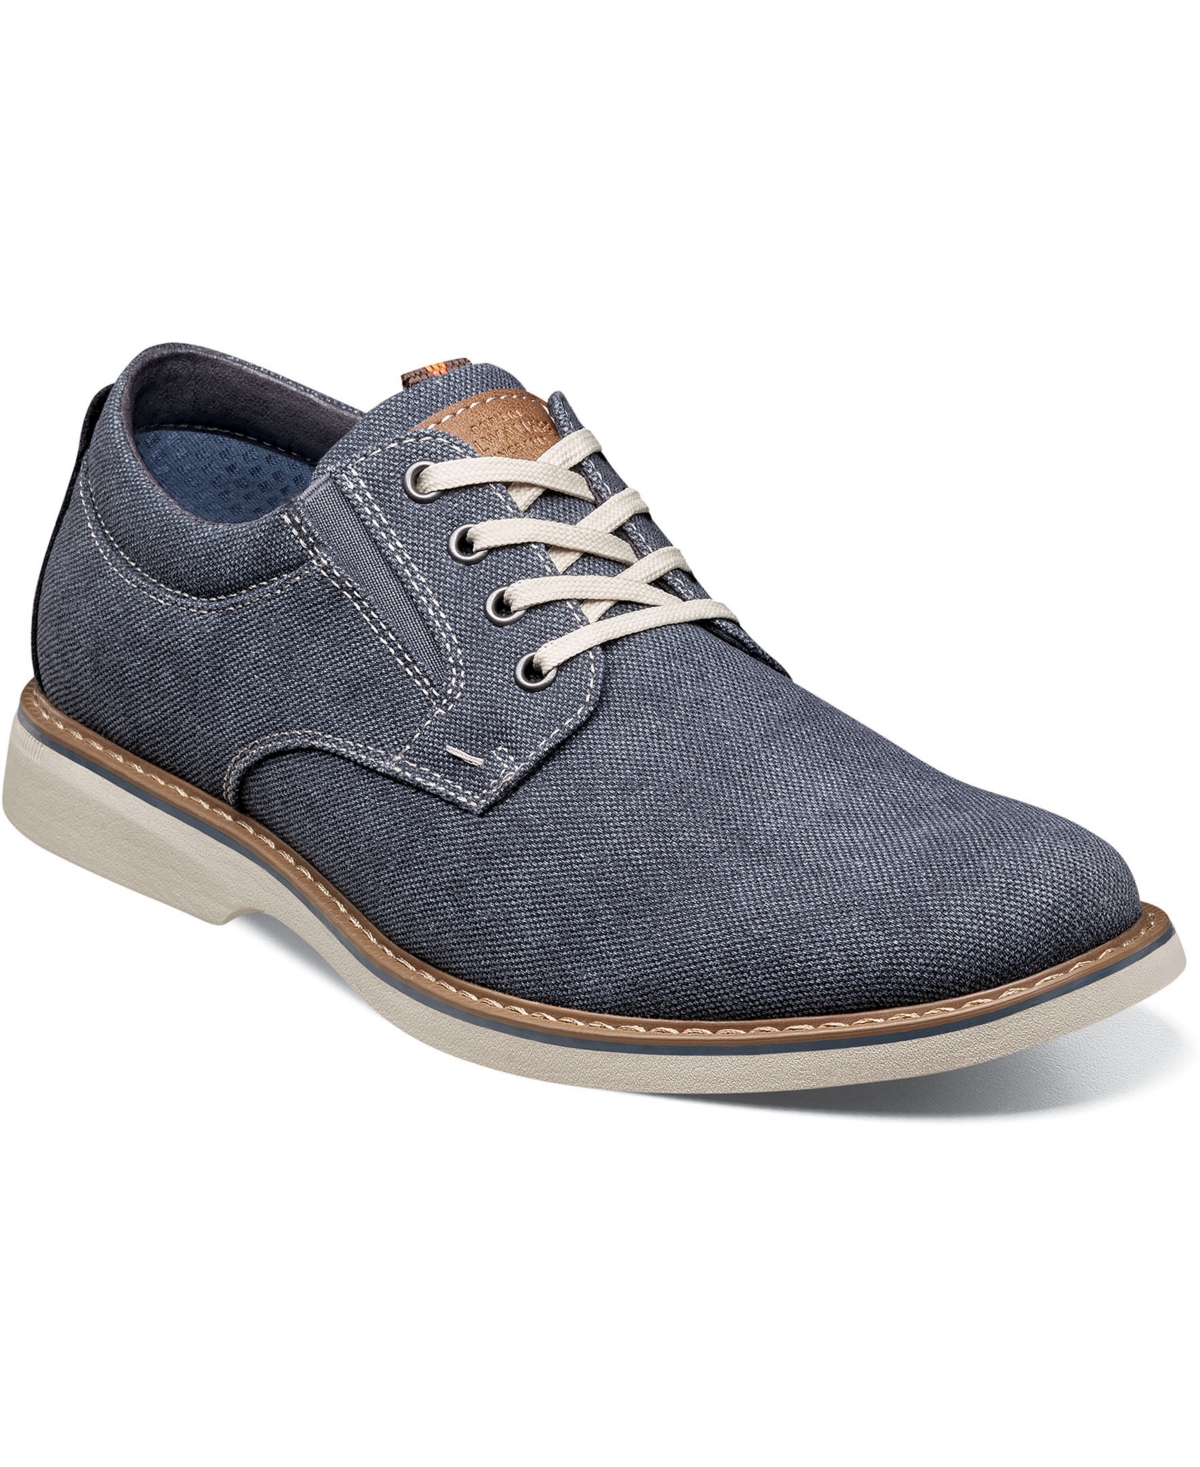 Men's Otto Canvas Plain Toe Oxford Shoes - Blue Denim